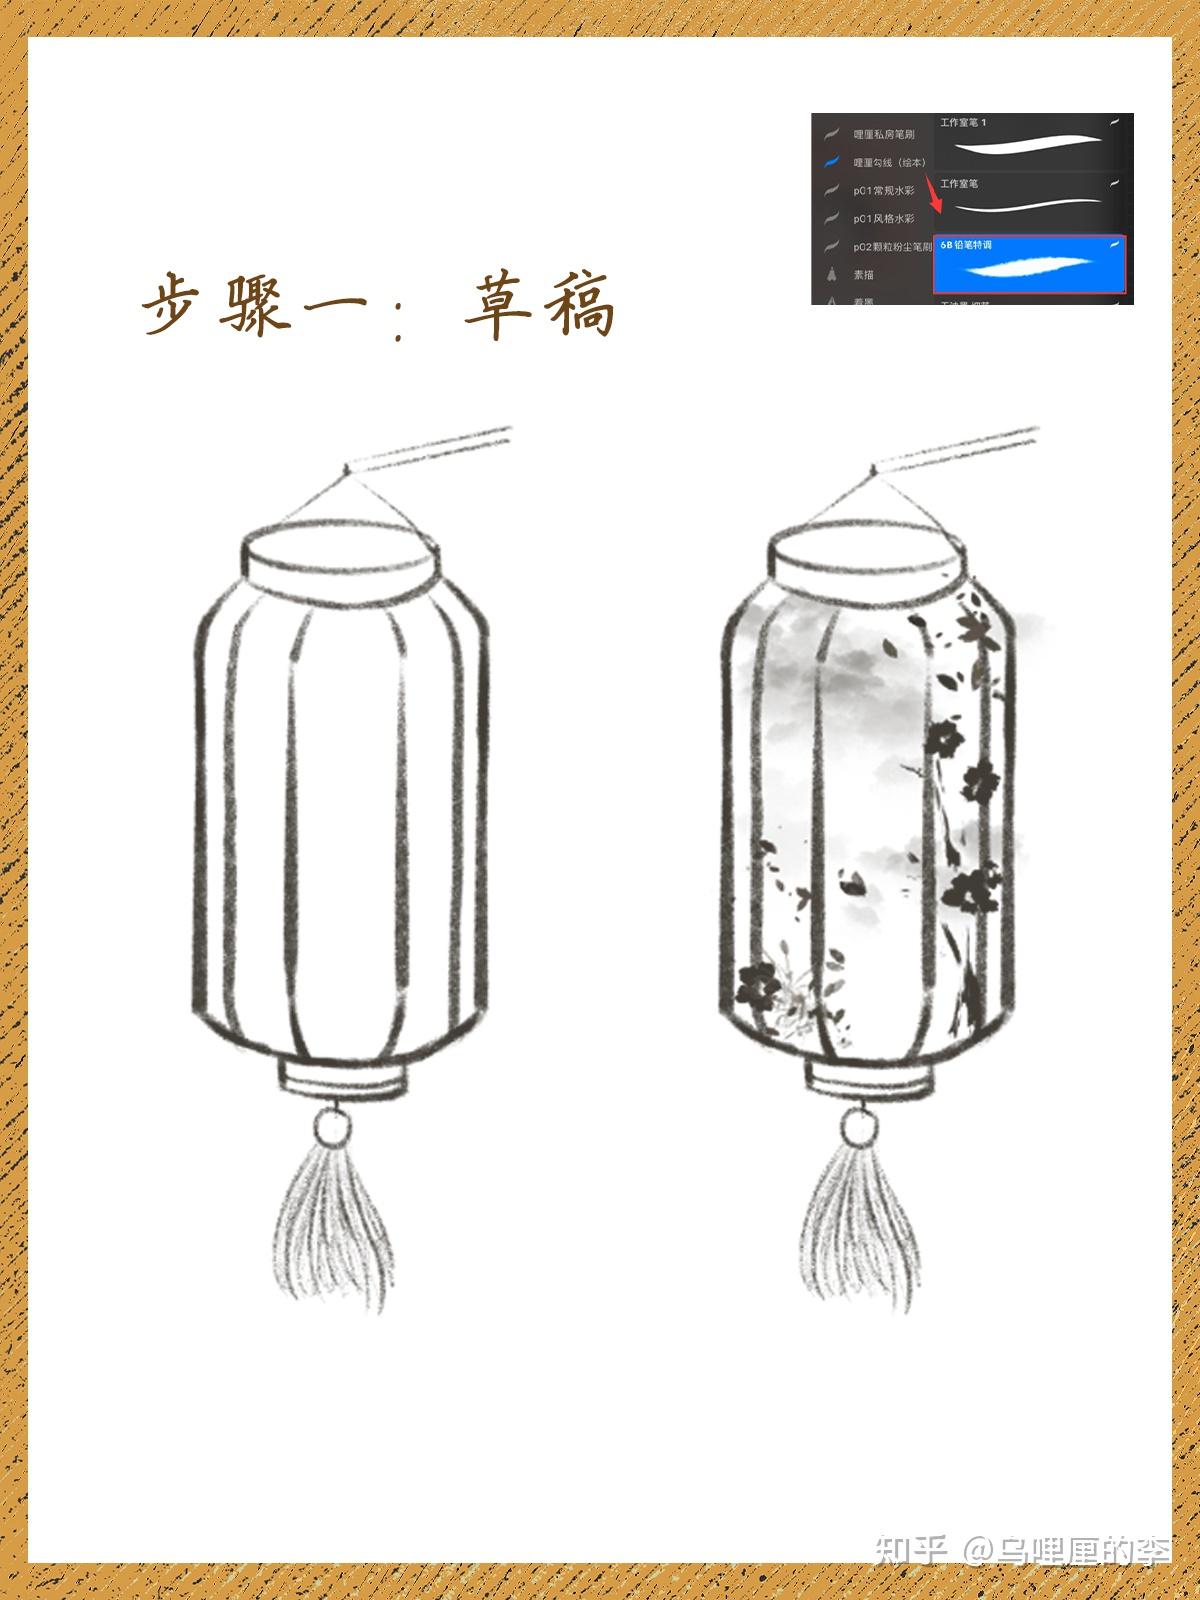 明确灯笼的的形状和款式,会偏向于中国风纸质的感觉,构思完就可以开始